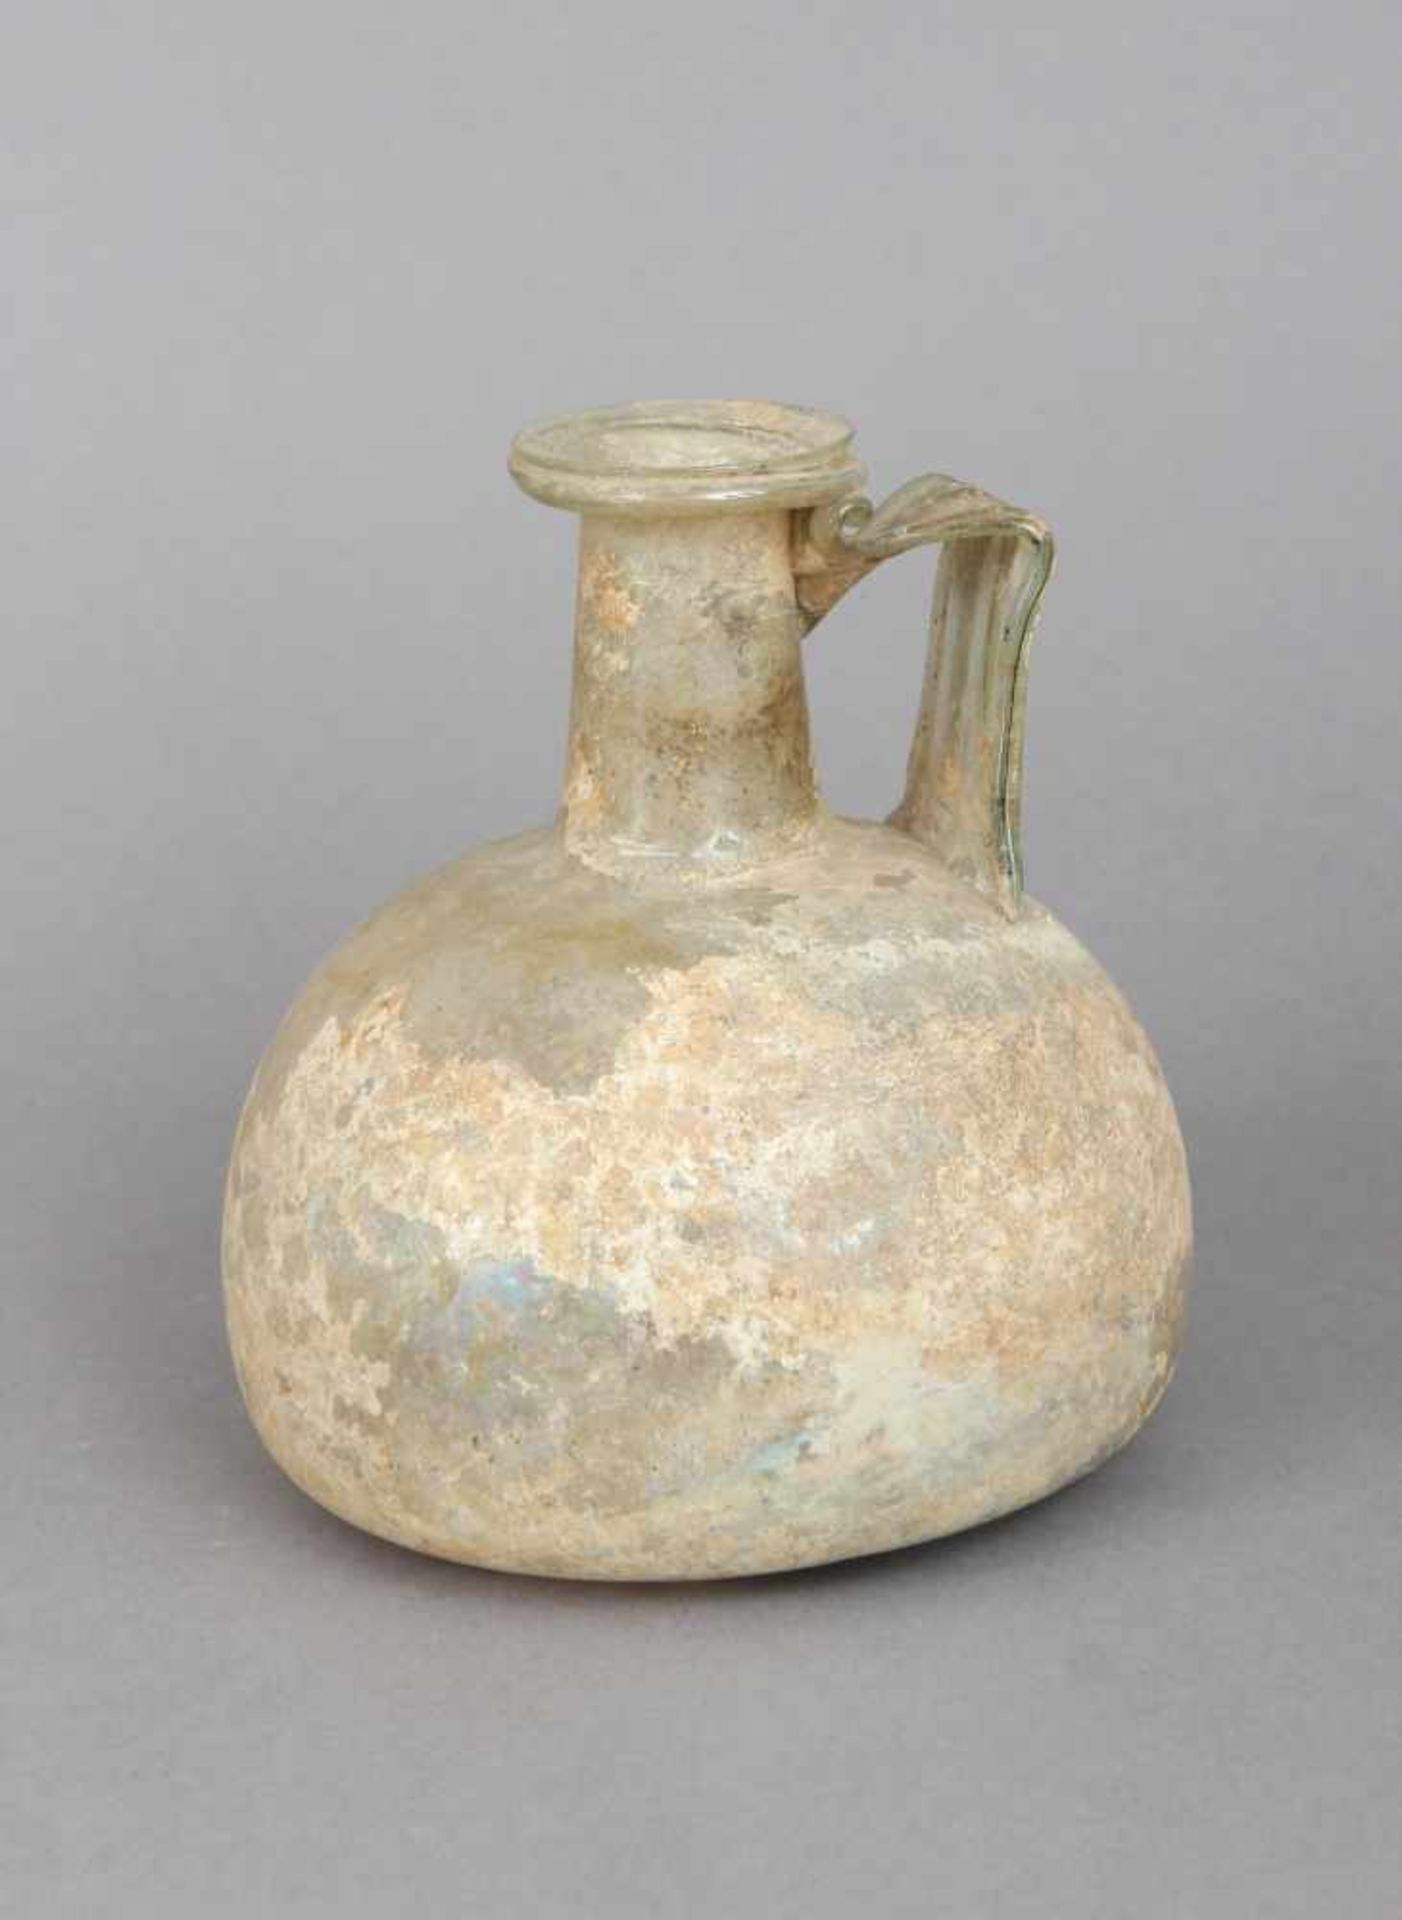 Antike römische Glasflaschewohl 200 n. Chr., kugelförmiges Gefäß mit zylindrischem Hals und sei